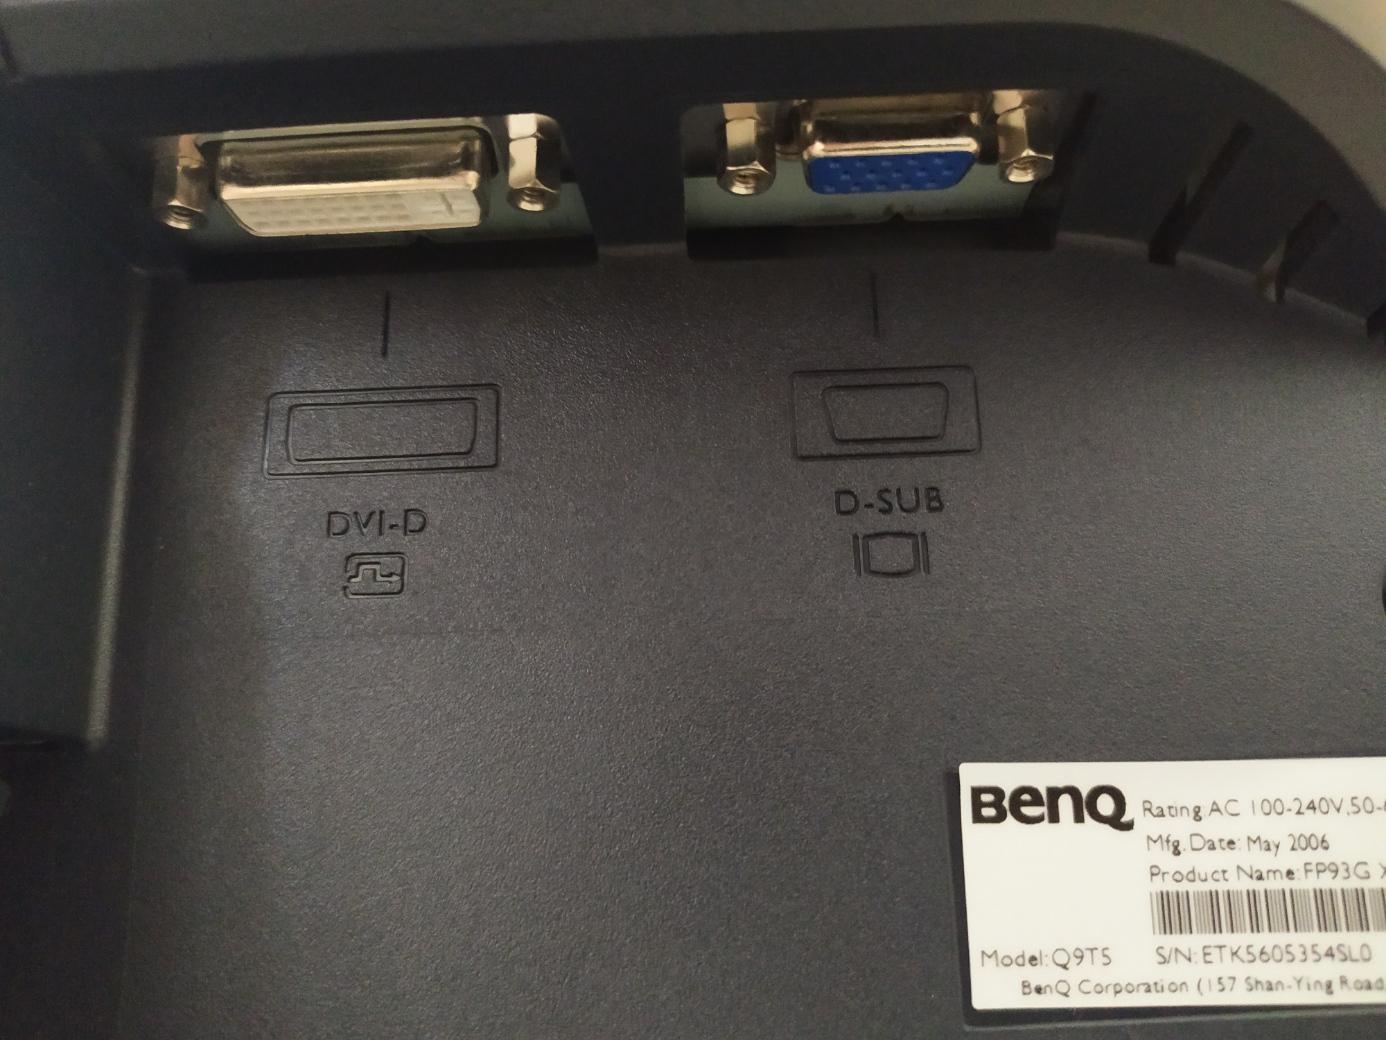 Monitor Benq Q9TS 19" - Příslušenství k PC